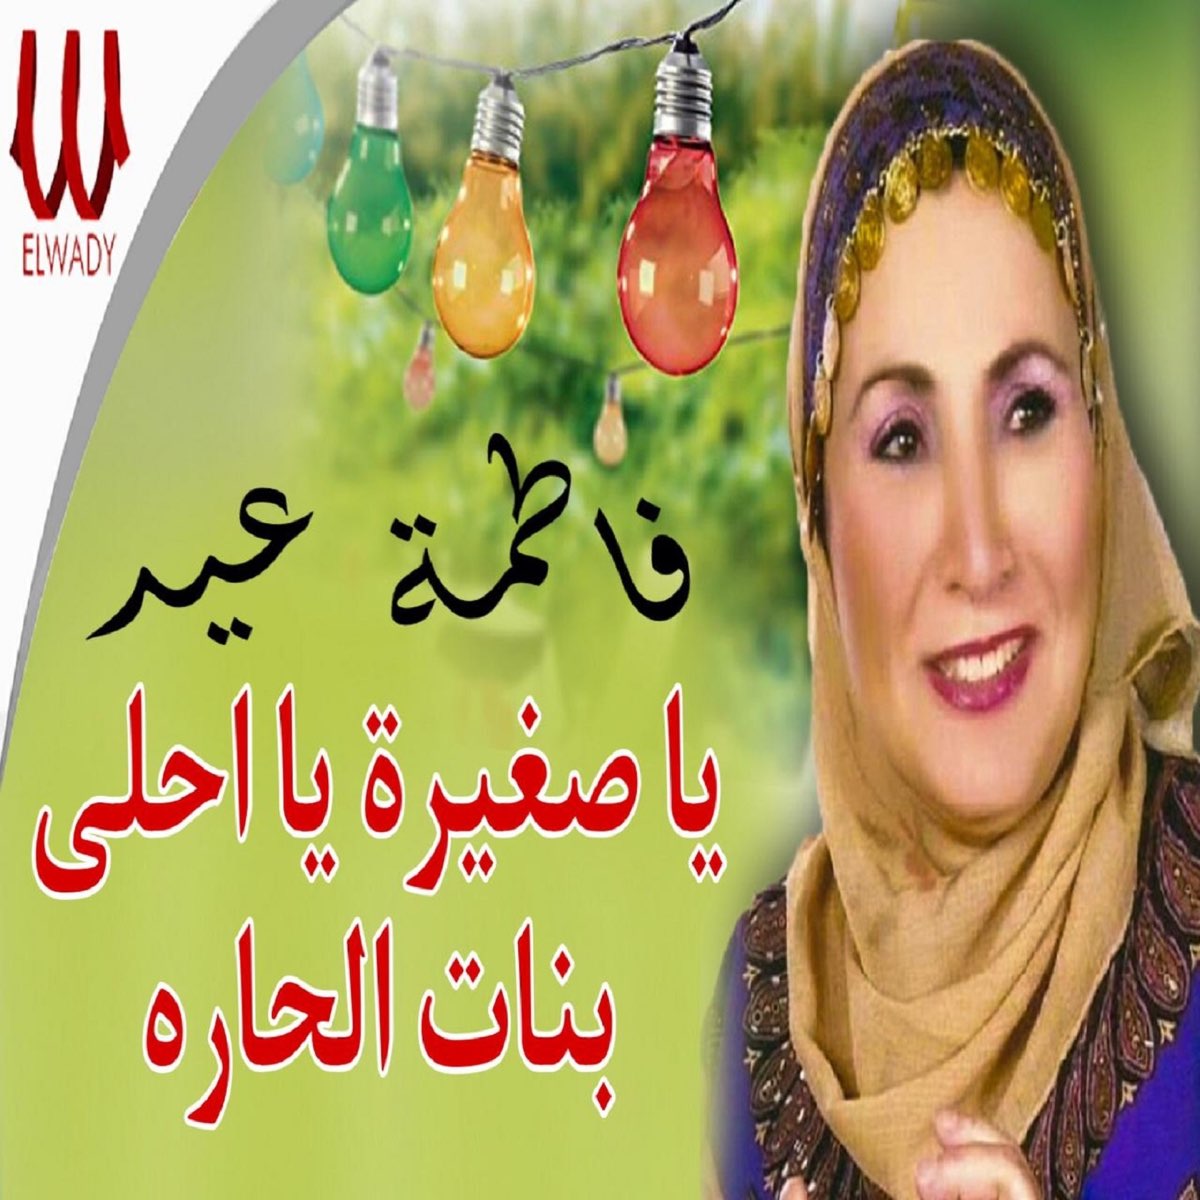 يا صغيرة يا احلى بنات الحارة - Single - Album by Fatma Eid - Apple Music